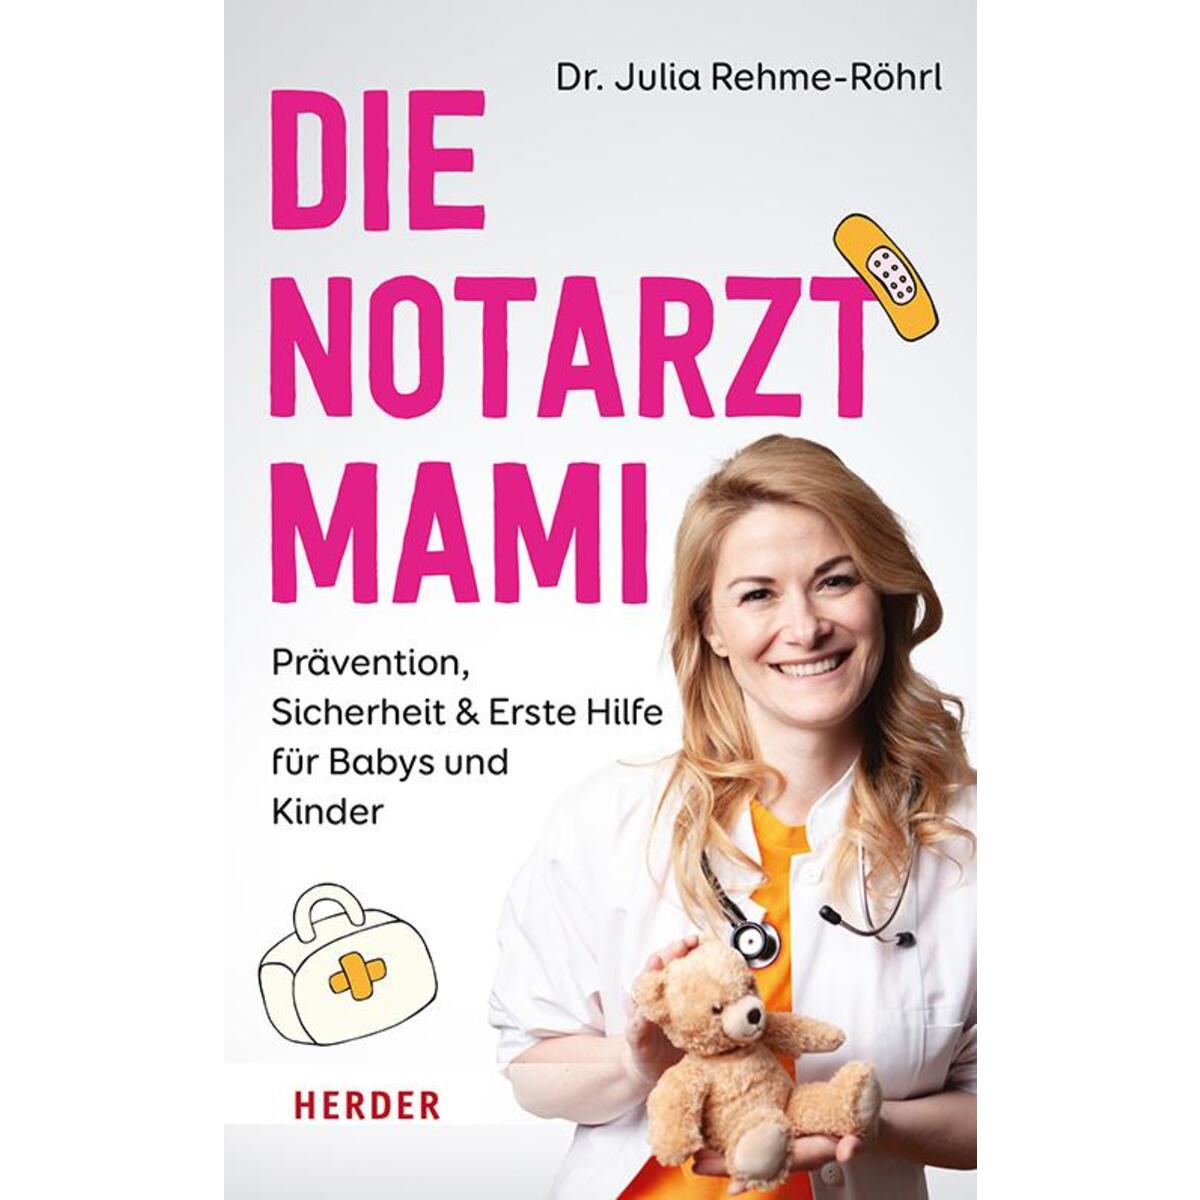 Die Notarztmami von Herder Verlag GmbH